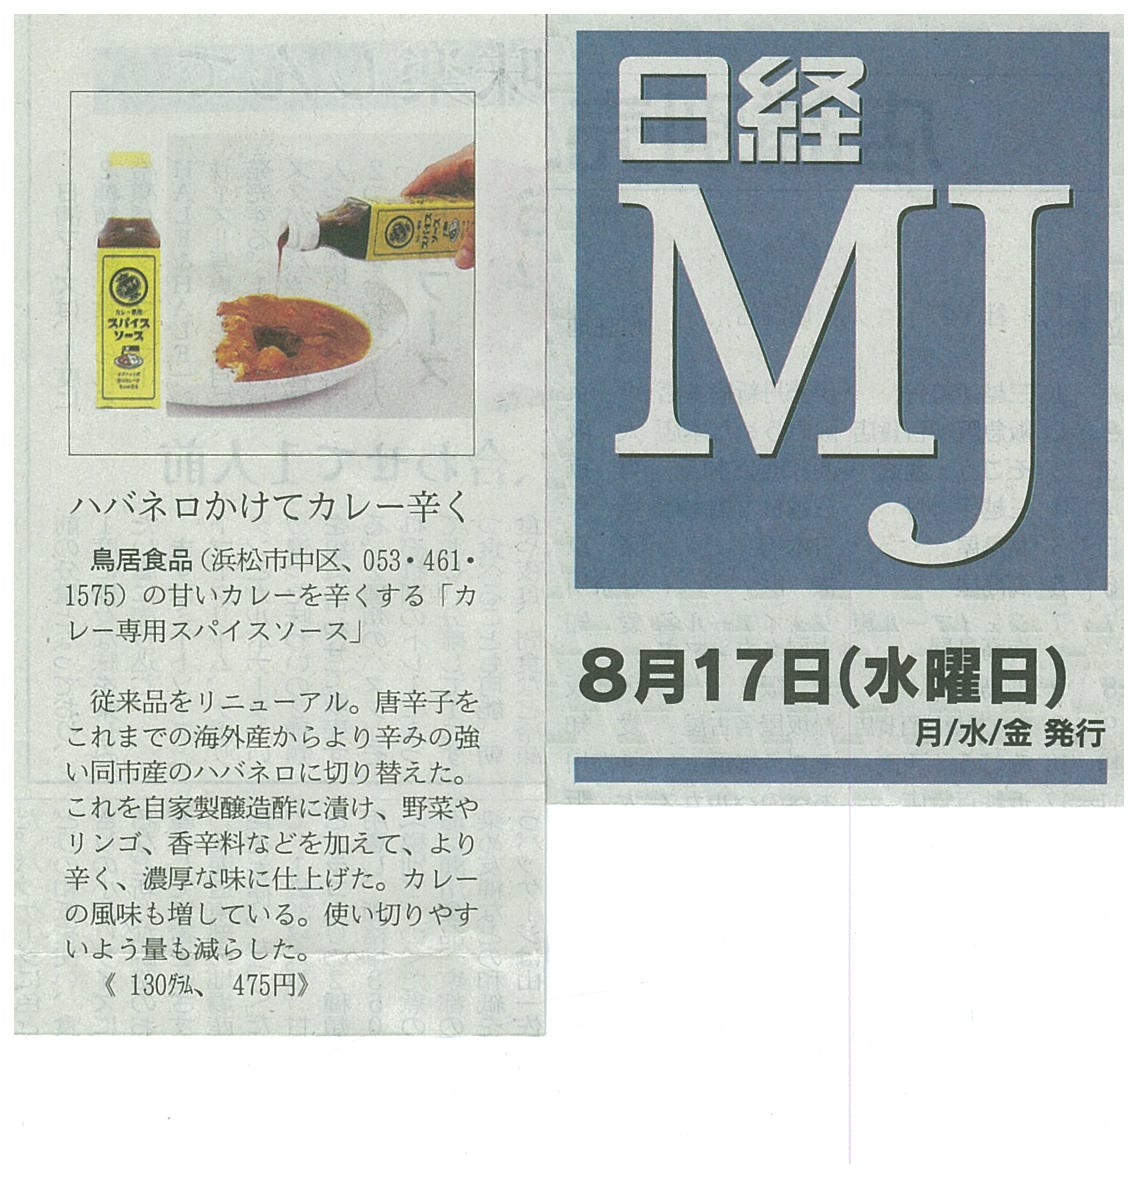 http://www.torii-sauce.jp/media/%E6%97%A5%E7%B5%8C%EF%BC%AD%EF%BC%AA%E3%82%AB%E3%83%AC%E3%83%BC%E5%B0%82%E7%94%A8.jpg